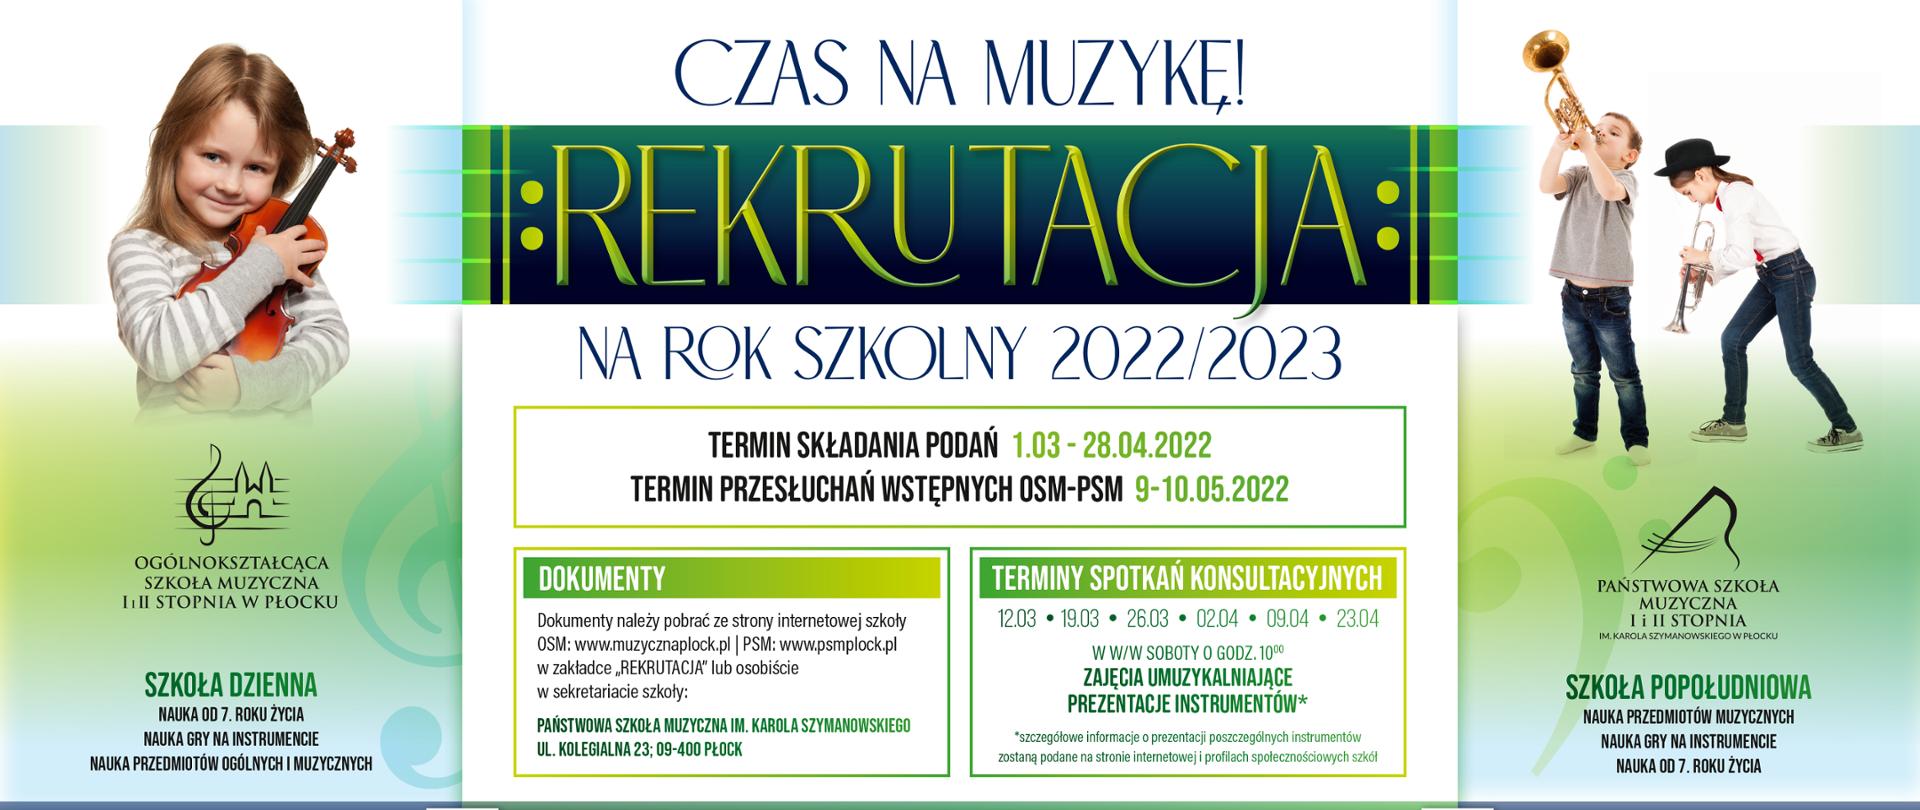 Plakat rekrutacyjny z informacją dotyczącą terminów składania podań: 1.03 - 28.04.2022 i przesłuchań wstępnych: 9-10.05.2022